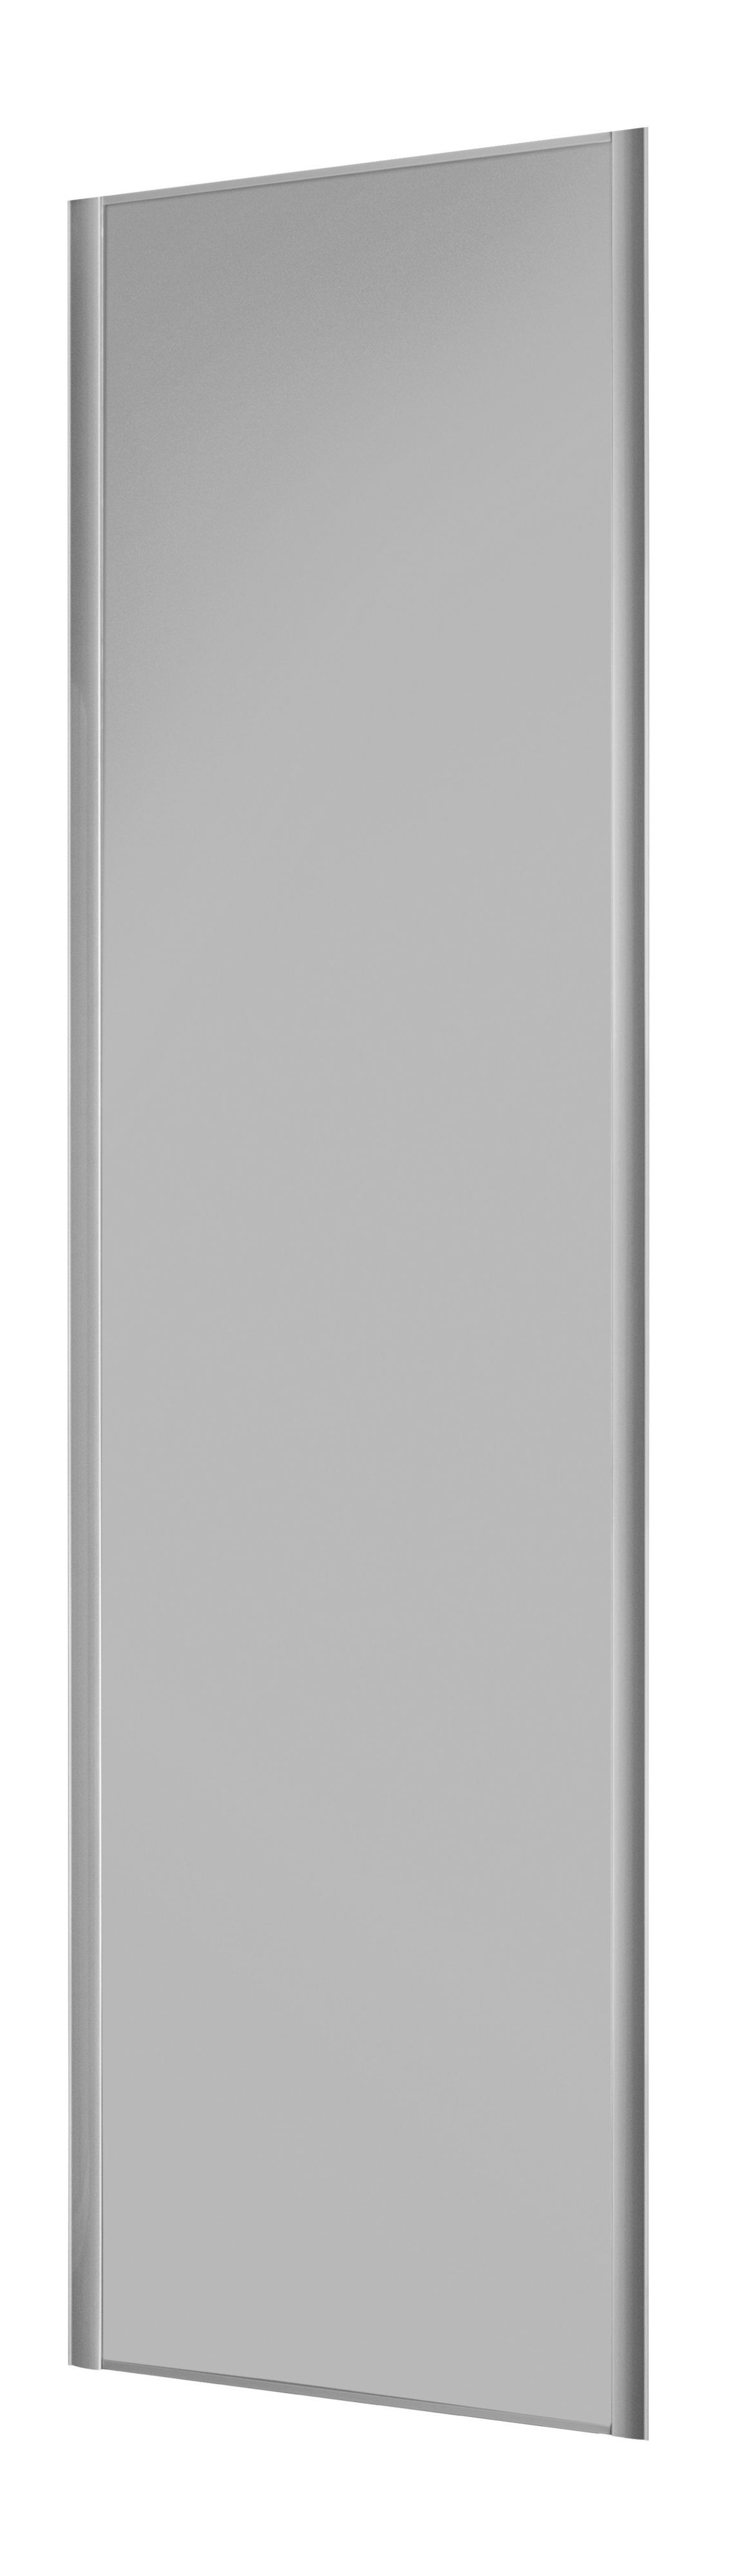 Form Valla Light grey Sliding wardrobe door (H) 2260mm x (W) 622mm